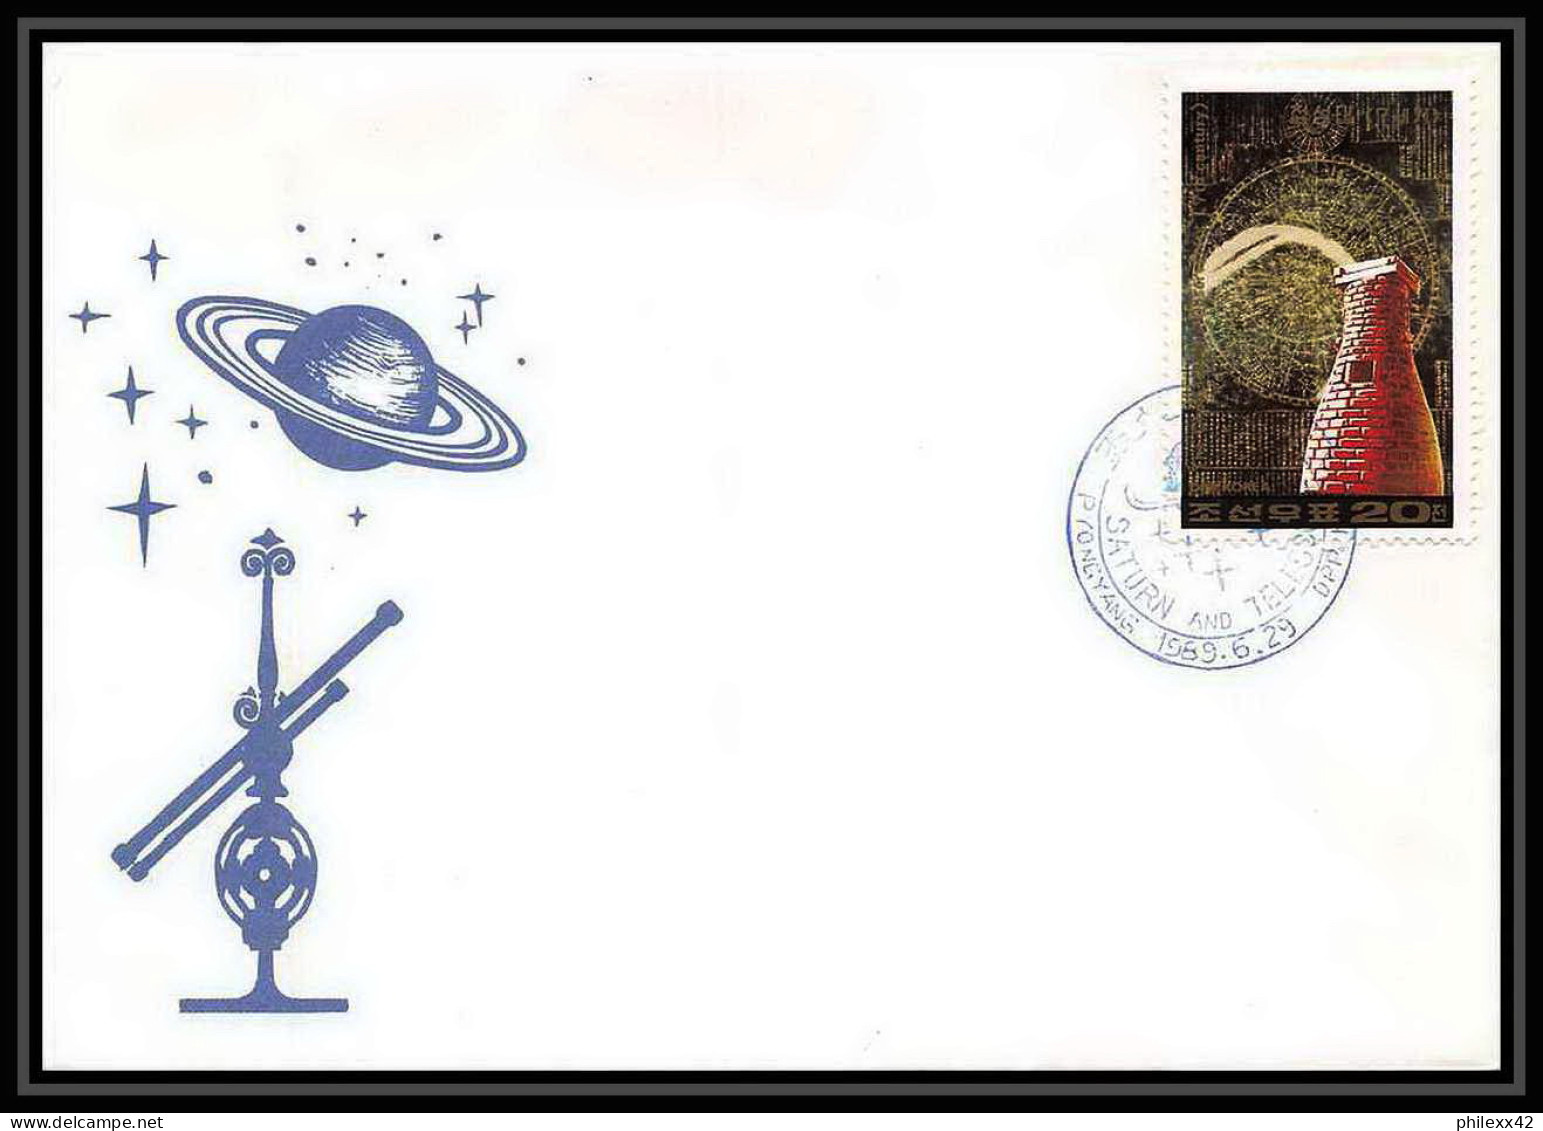 9759/ Espace (space) Lettre (cover) 29/6/1989 Planet Saturn Telescopes Corée (korea) - Asia